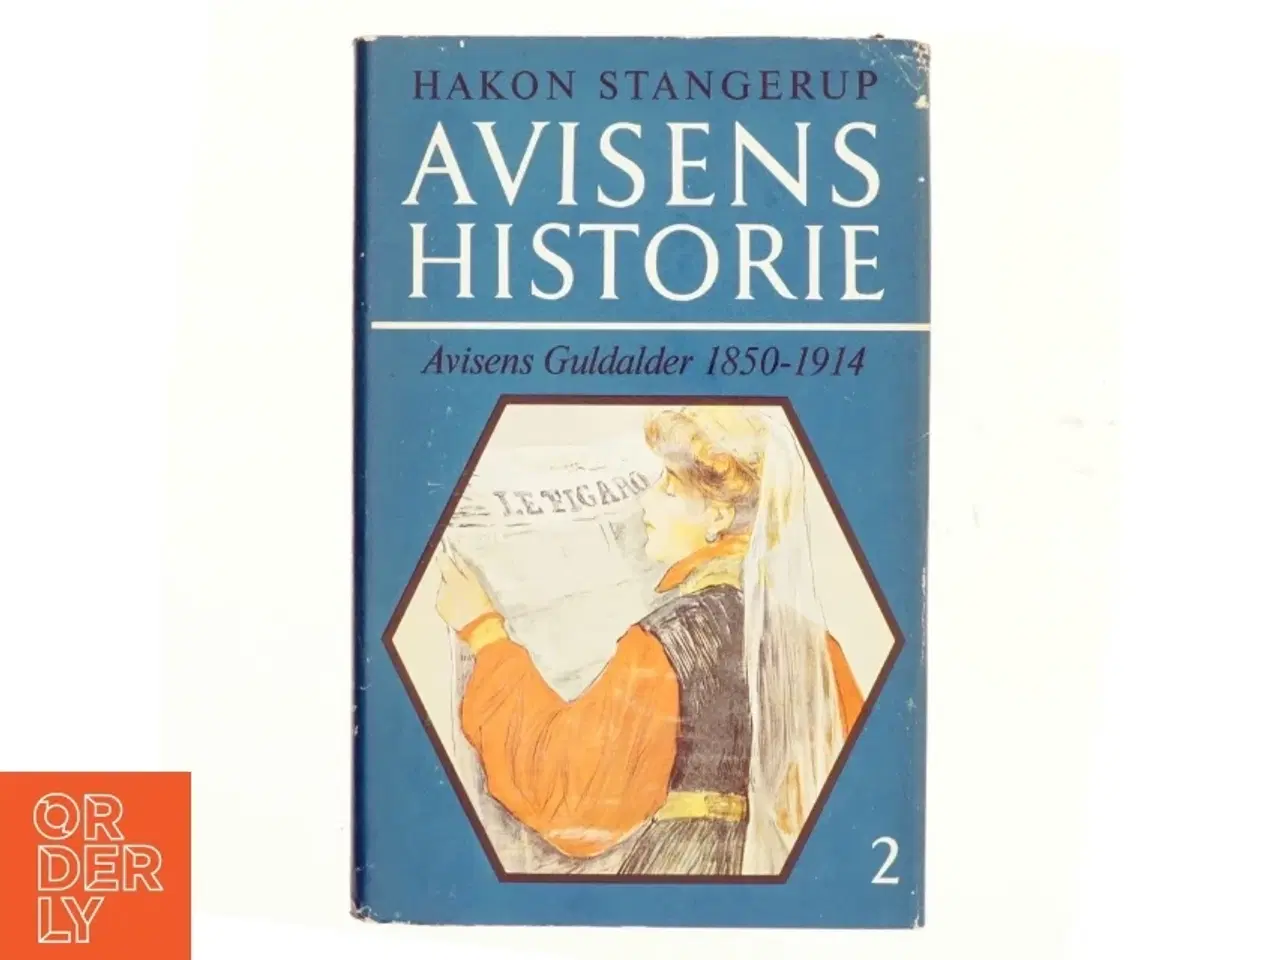 Billede 1 - Avisens historie 2 af Hakon Stangerup (bog)